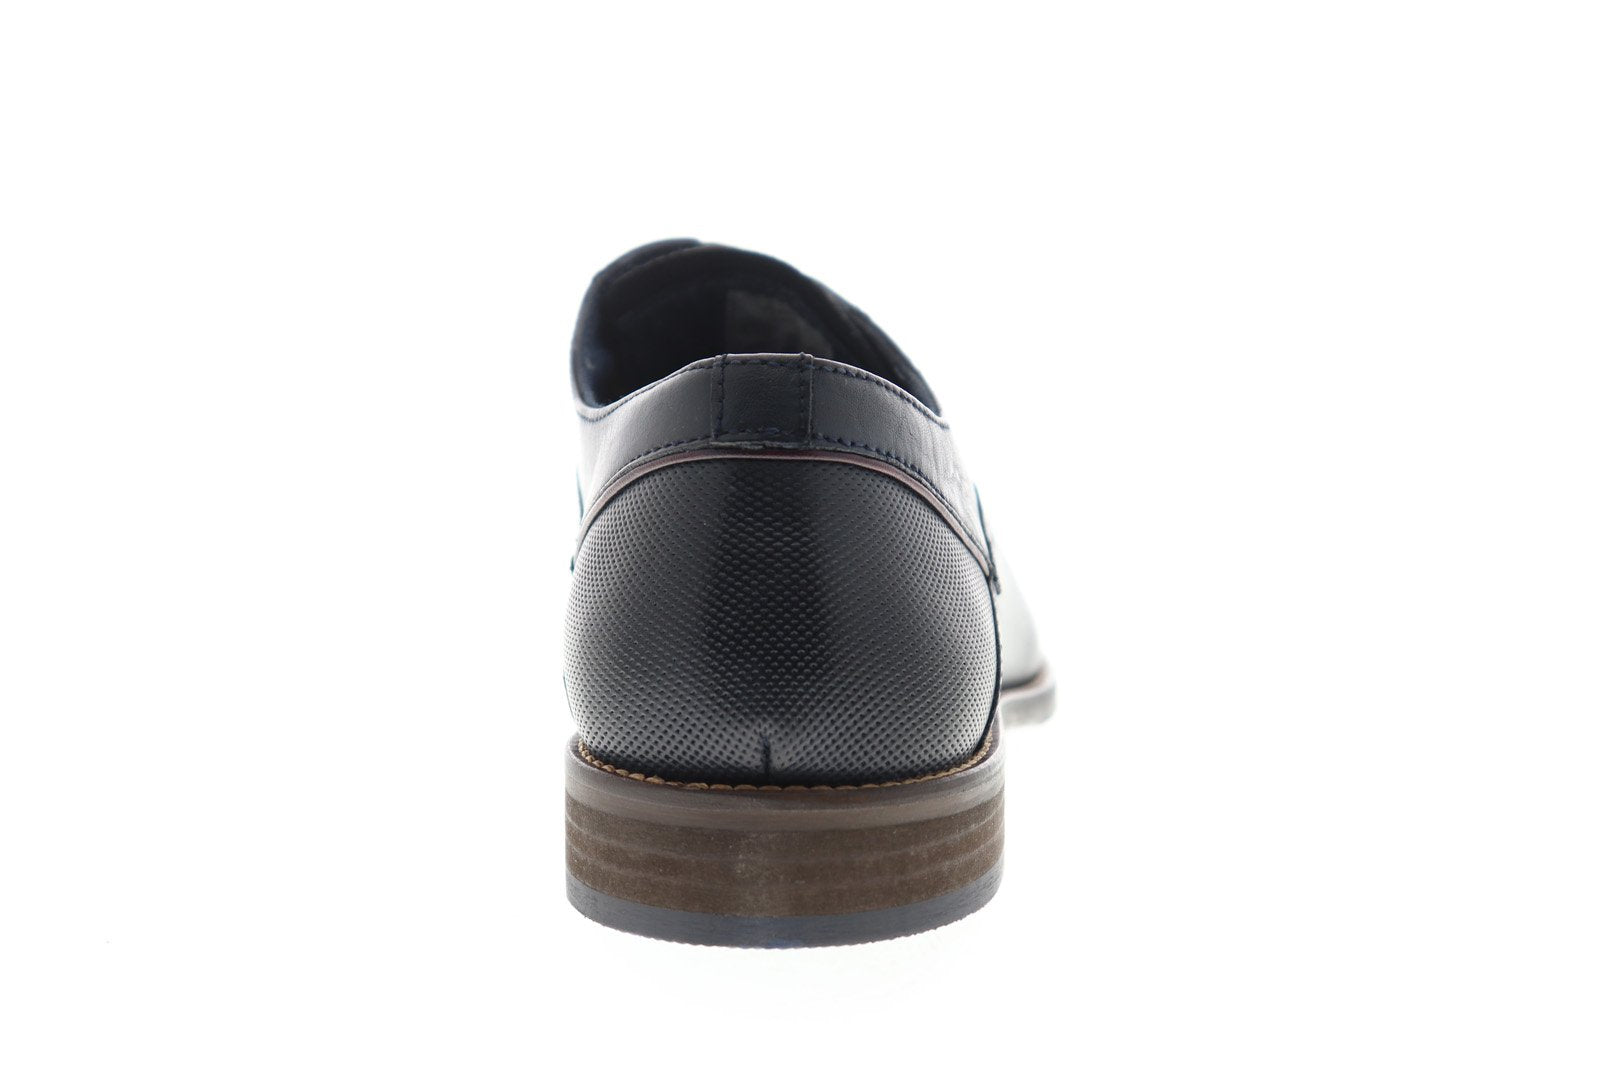 Jual DK Shoes - Nikko 8120 Bintik / Sankyo 38-43 Sepatu Karet Laki Hitam  Murah | Shopee Indonesia